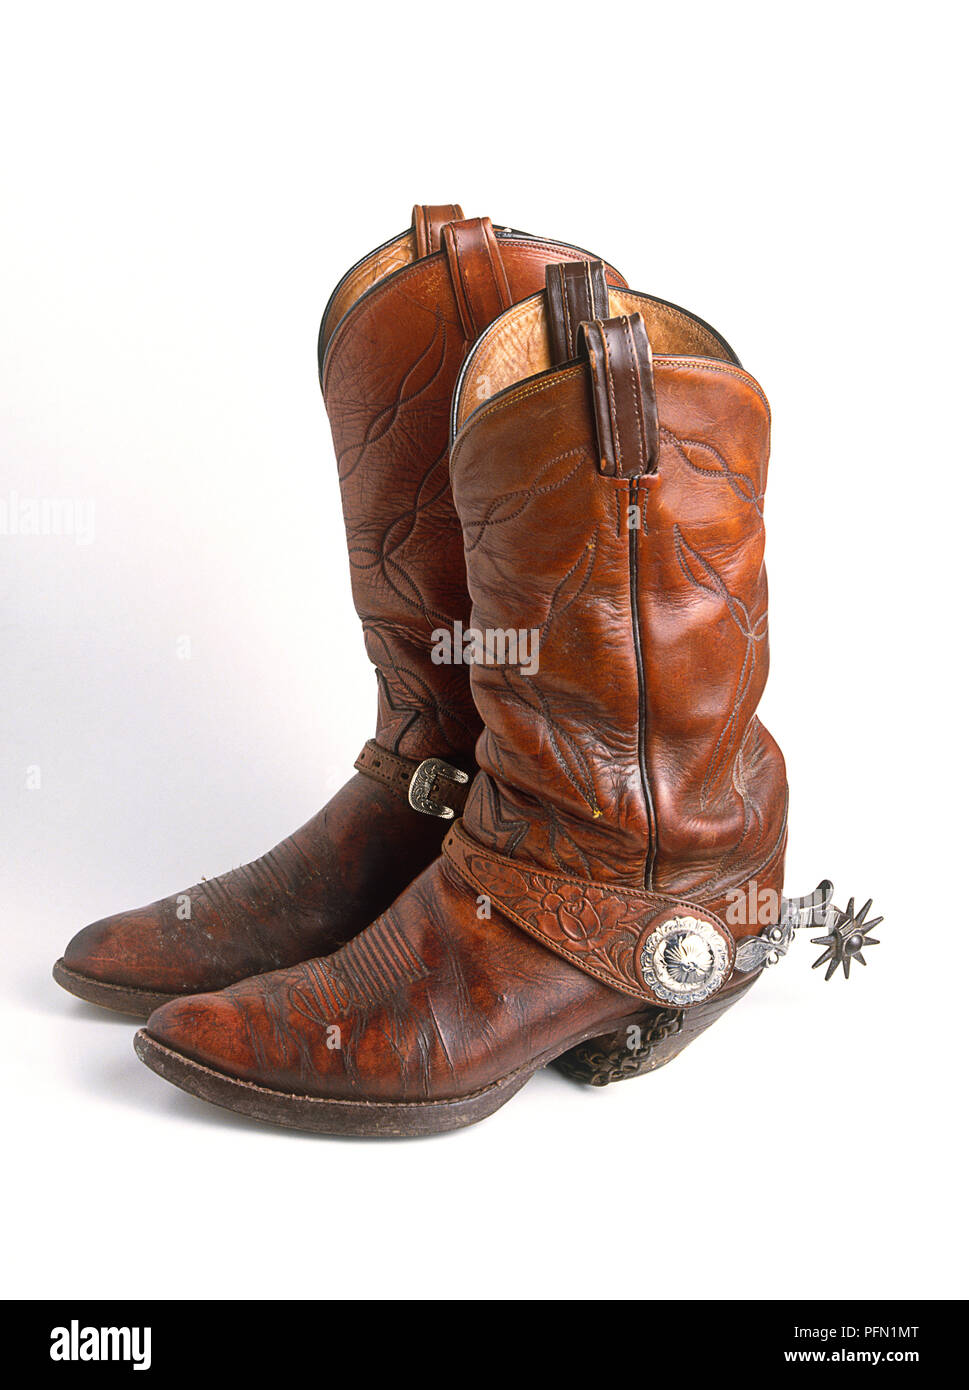 Paar braune Leder Cowboy Stiefel mit Sporen Stockfotografie - Alamy